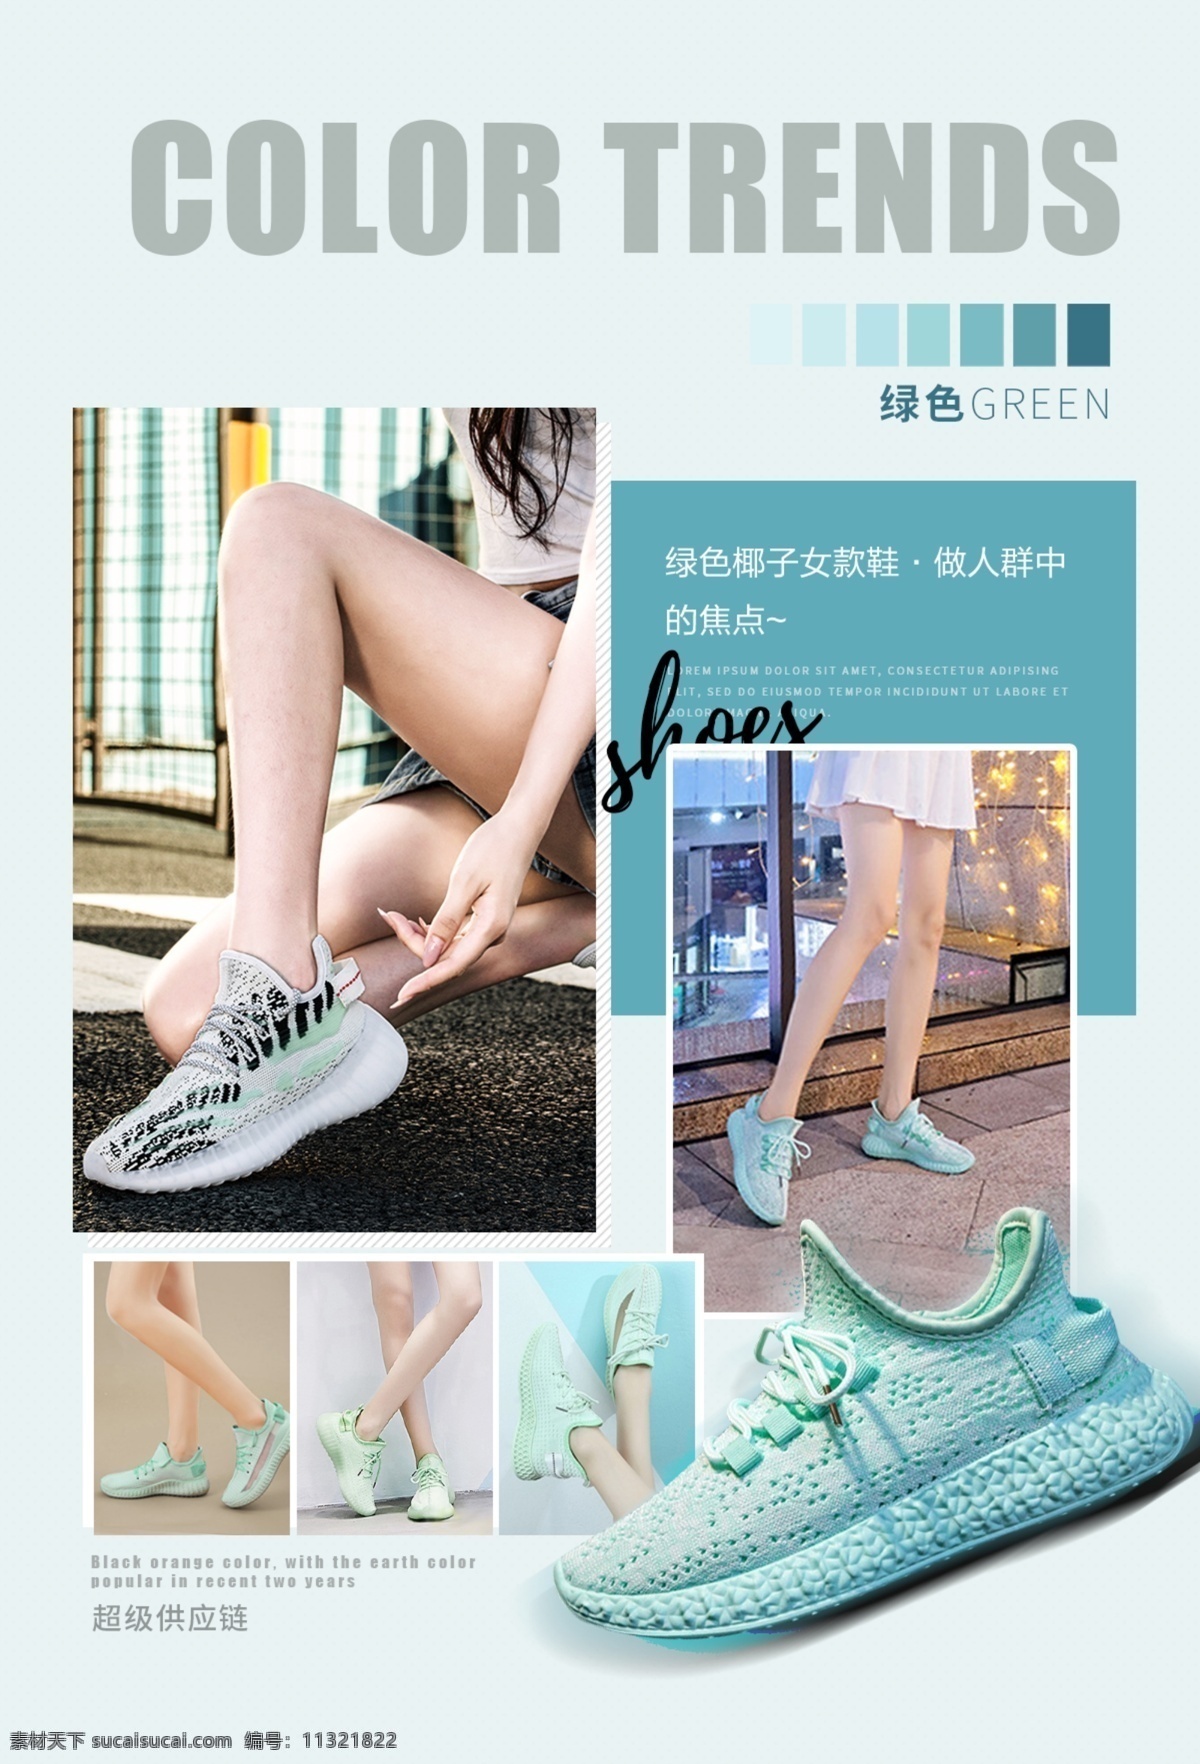 鞋子流行趋势 流行趋势 资讯 绿色 椰子鞋 海报 广告 文字 排版